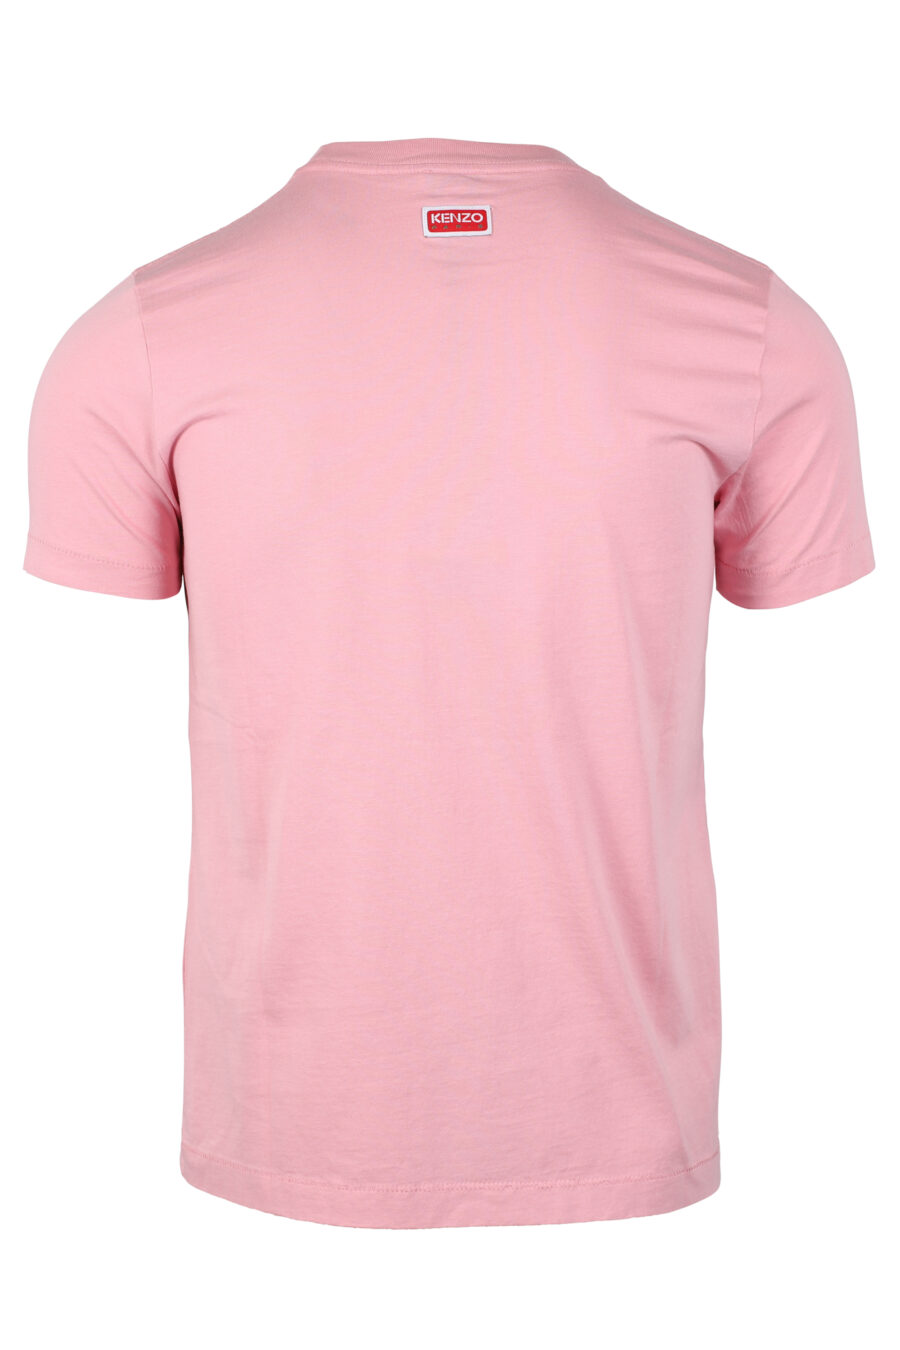 Rosa T-Shirt mit orangefarbenem Blumen-Maxilogo - IMG 4640